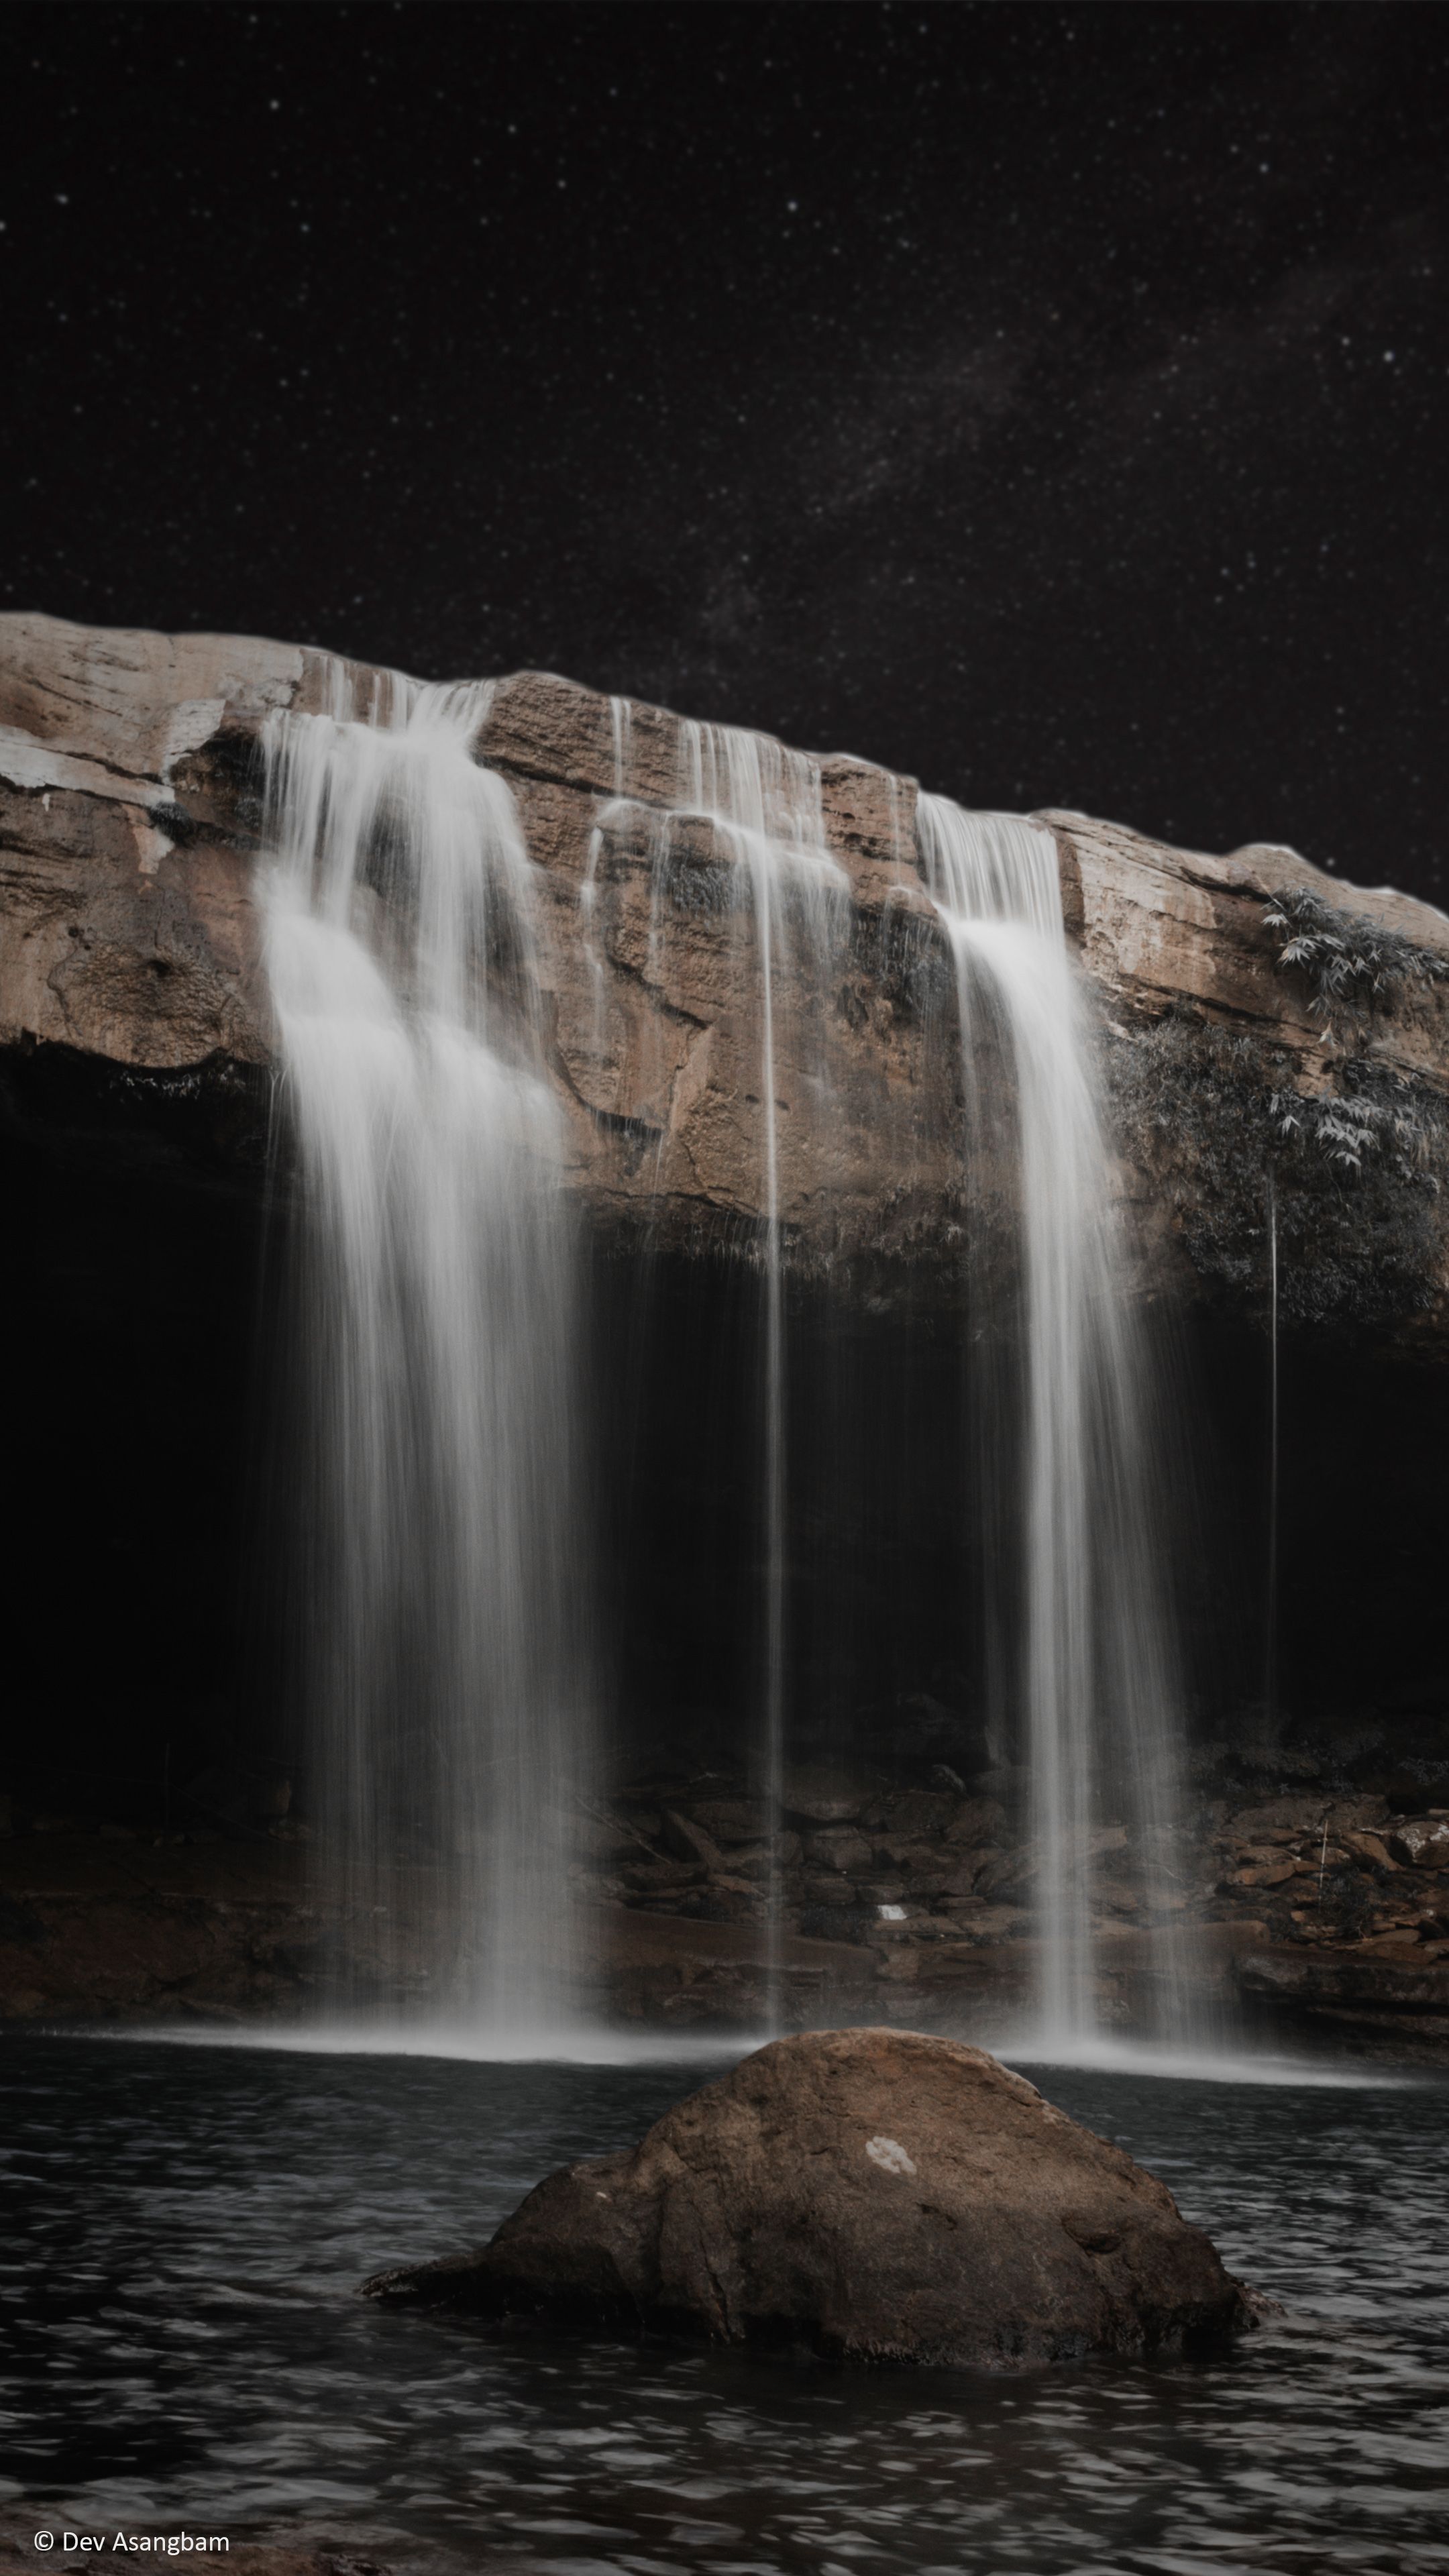 Waterfall Meghalaya Photography 4K Ultra HD Mobile Wallpaper. Photography 4k, Waterfall, Photography wallpaper